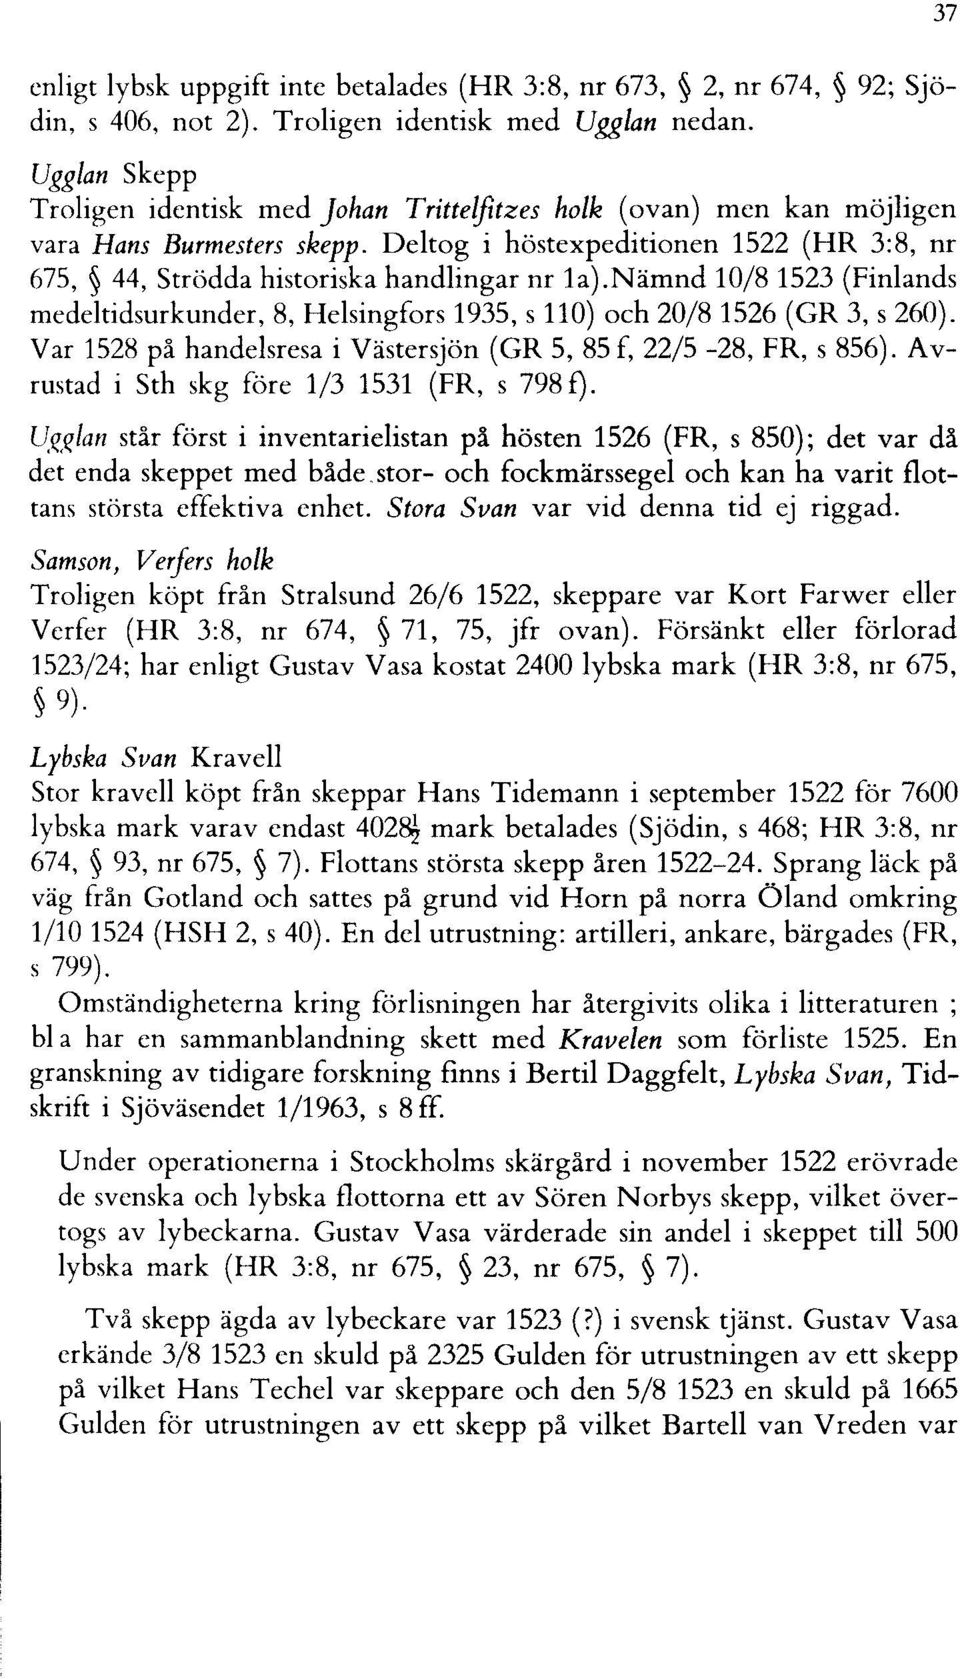 Deltog i höstexpeditionen 1522 (HR 3:8, nr 675, 44, Strödda historiska handlingar nr la).nämnd 10/81523 (Finlands medeltidsurkunder, 8, Helsingfors 1935, s 110) och 20/81526 (GR 3, s 260).